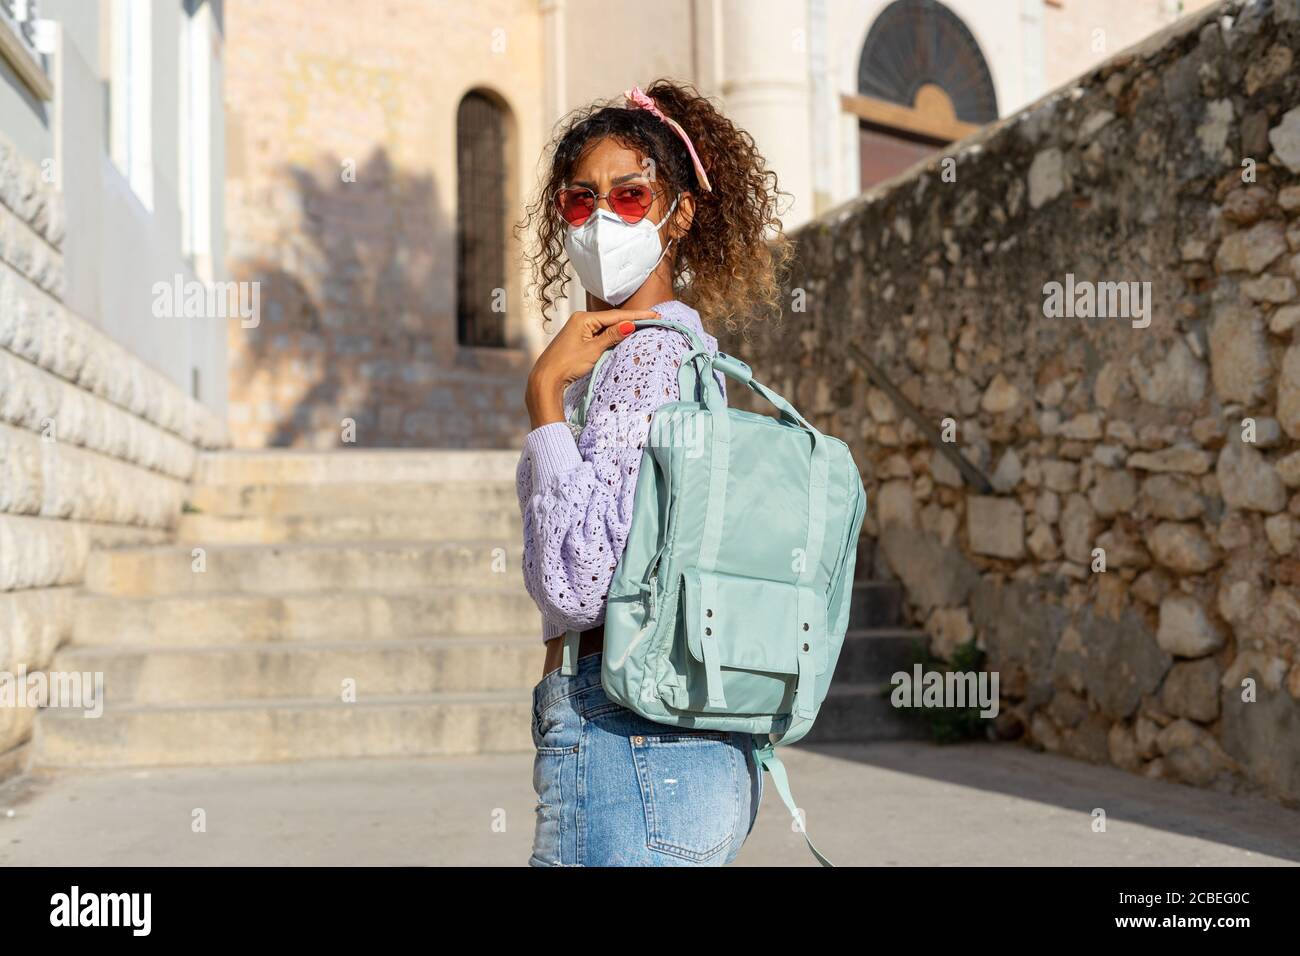 Porträt einer attraktiven jungen schwarzen Frau, die mit Rucksack und Maske läuft. Sehenswürdigkeiten Stockfoto